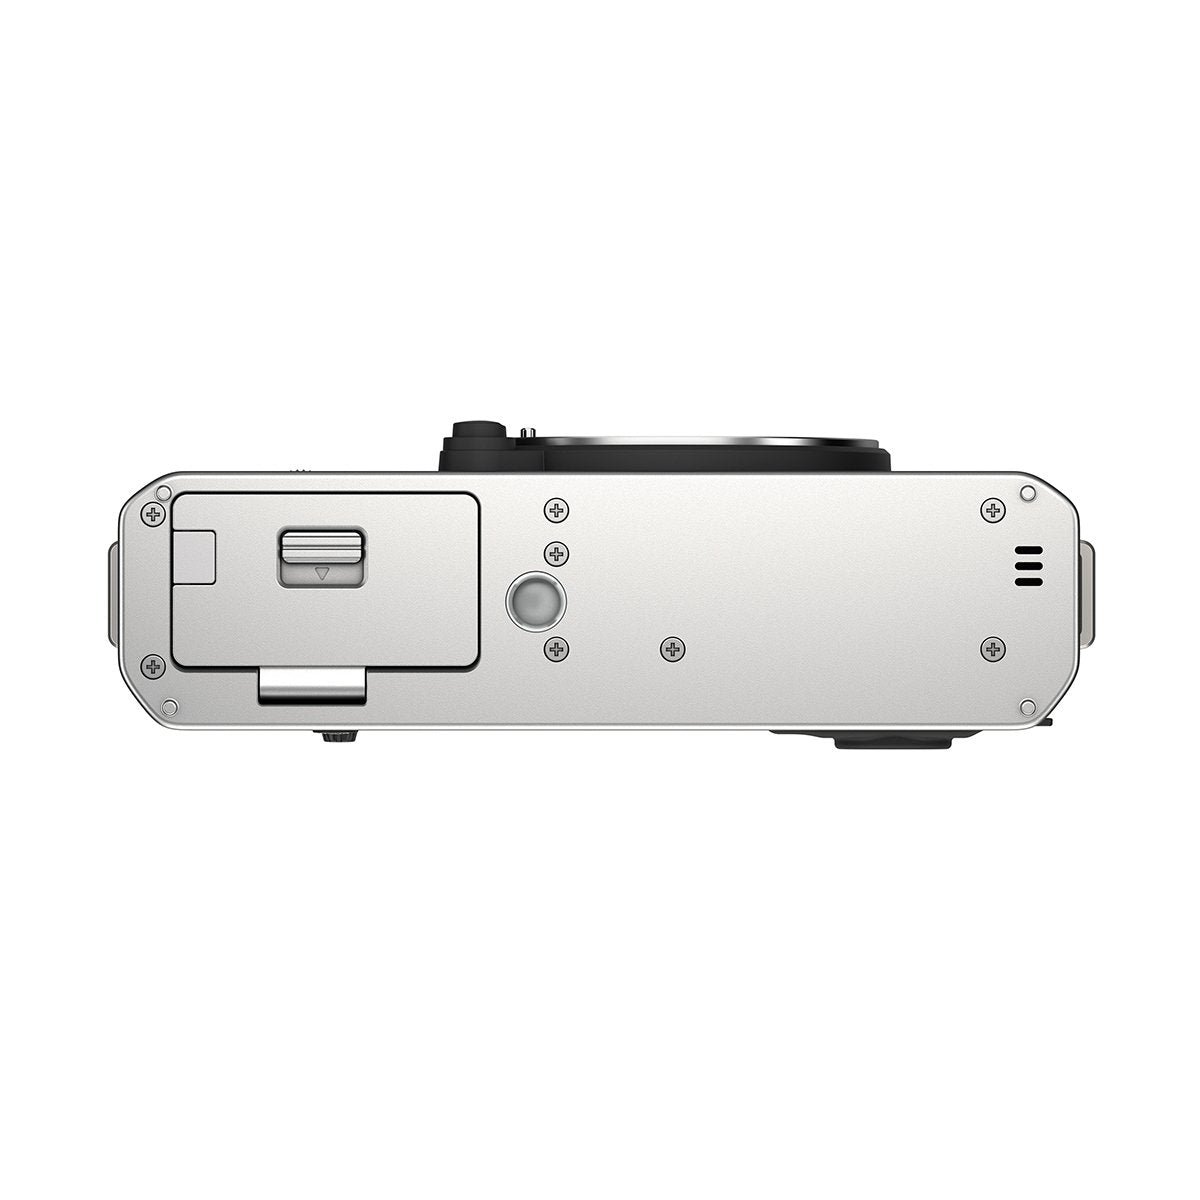 Fujifilm X-E4 Digital Camera Body (Silver) *OPEN BOX*